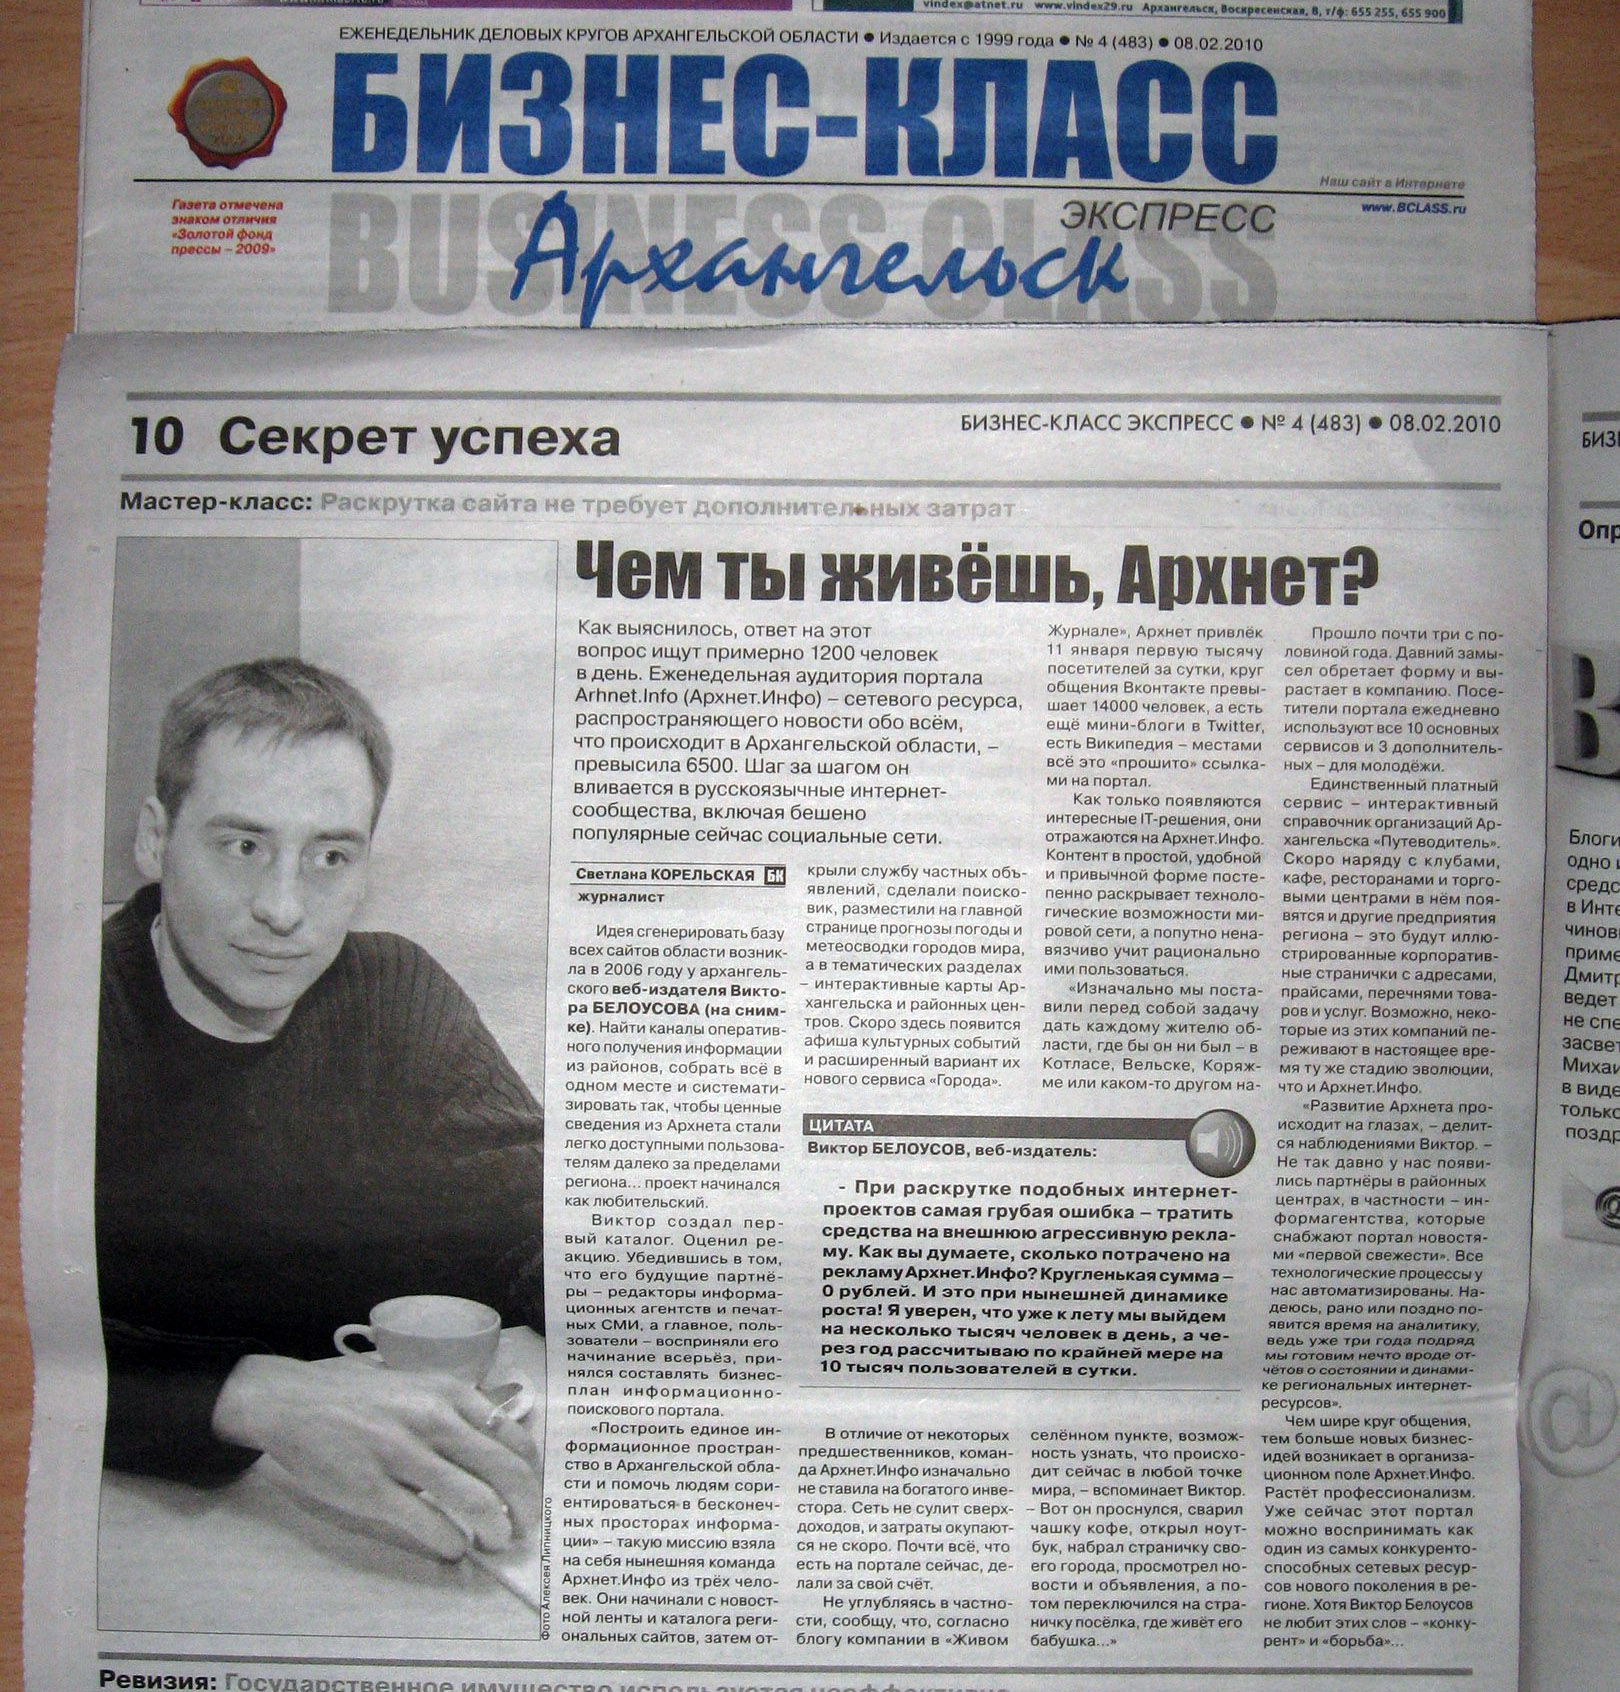 Интервью с Виктором Белоусовым в газете Газета29